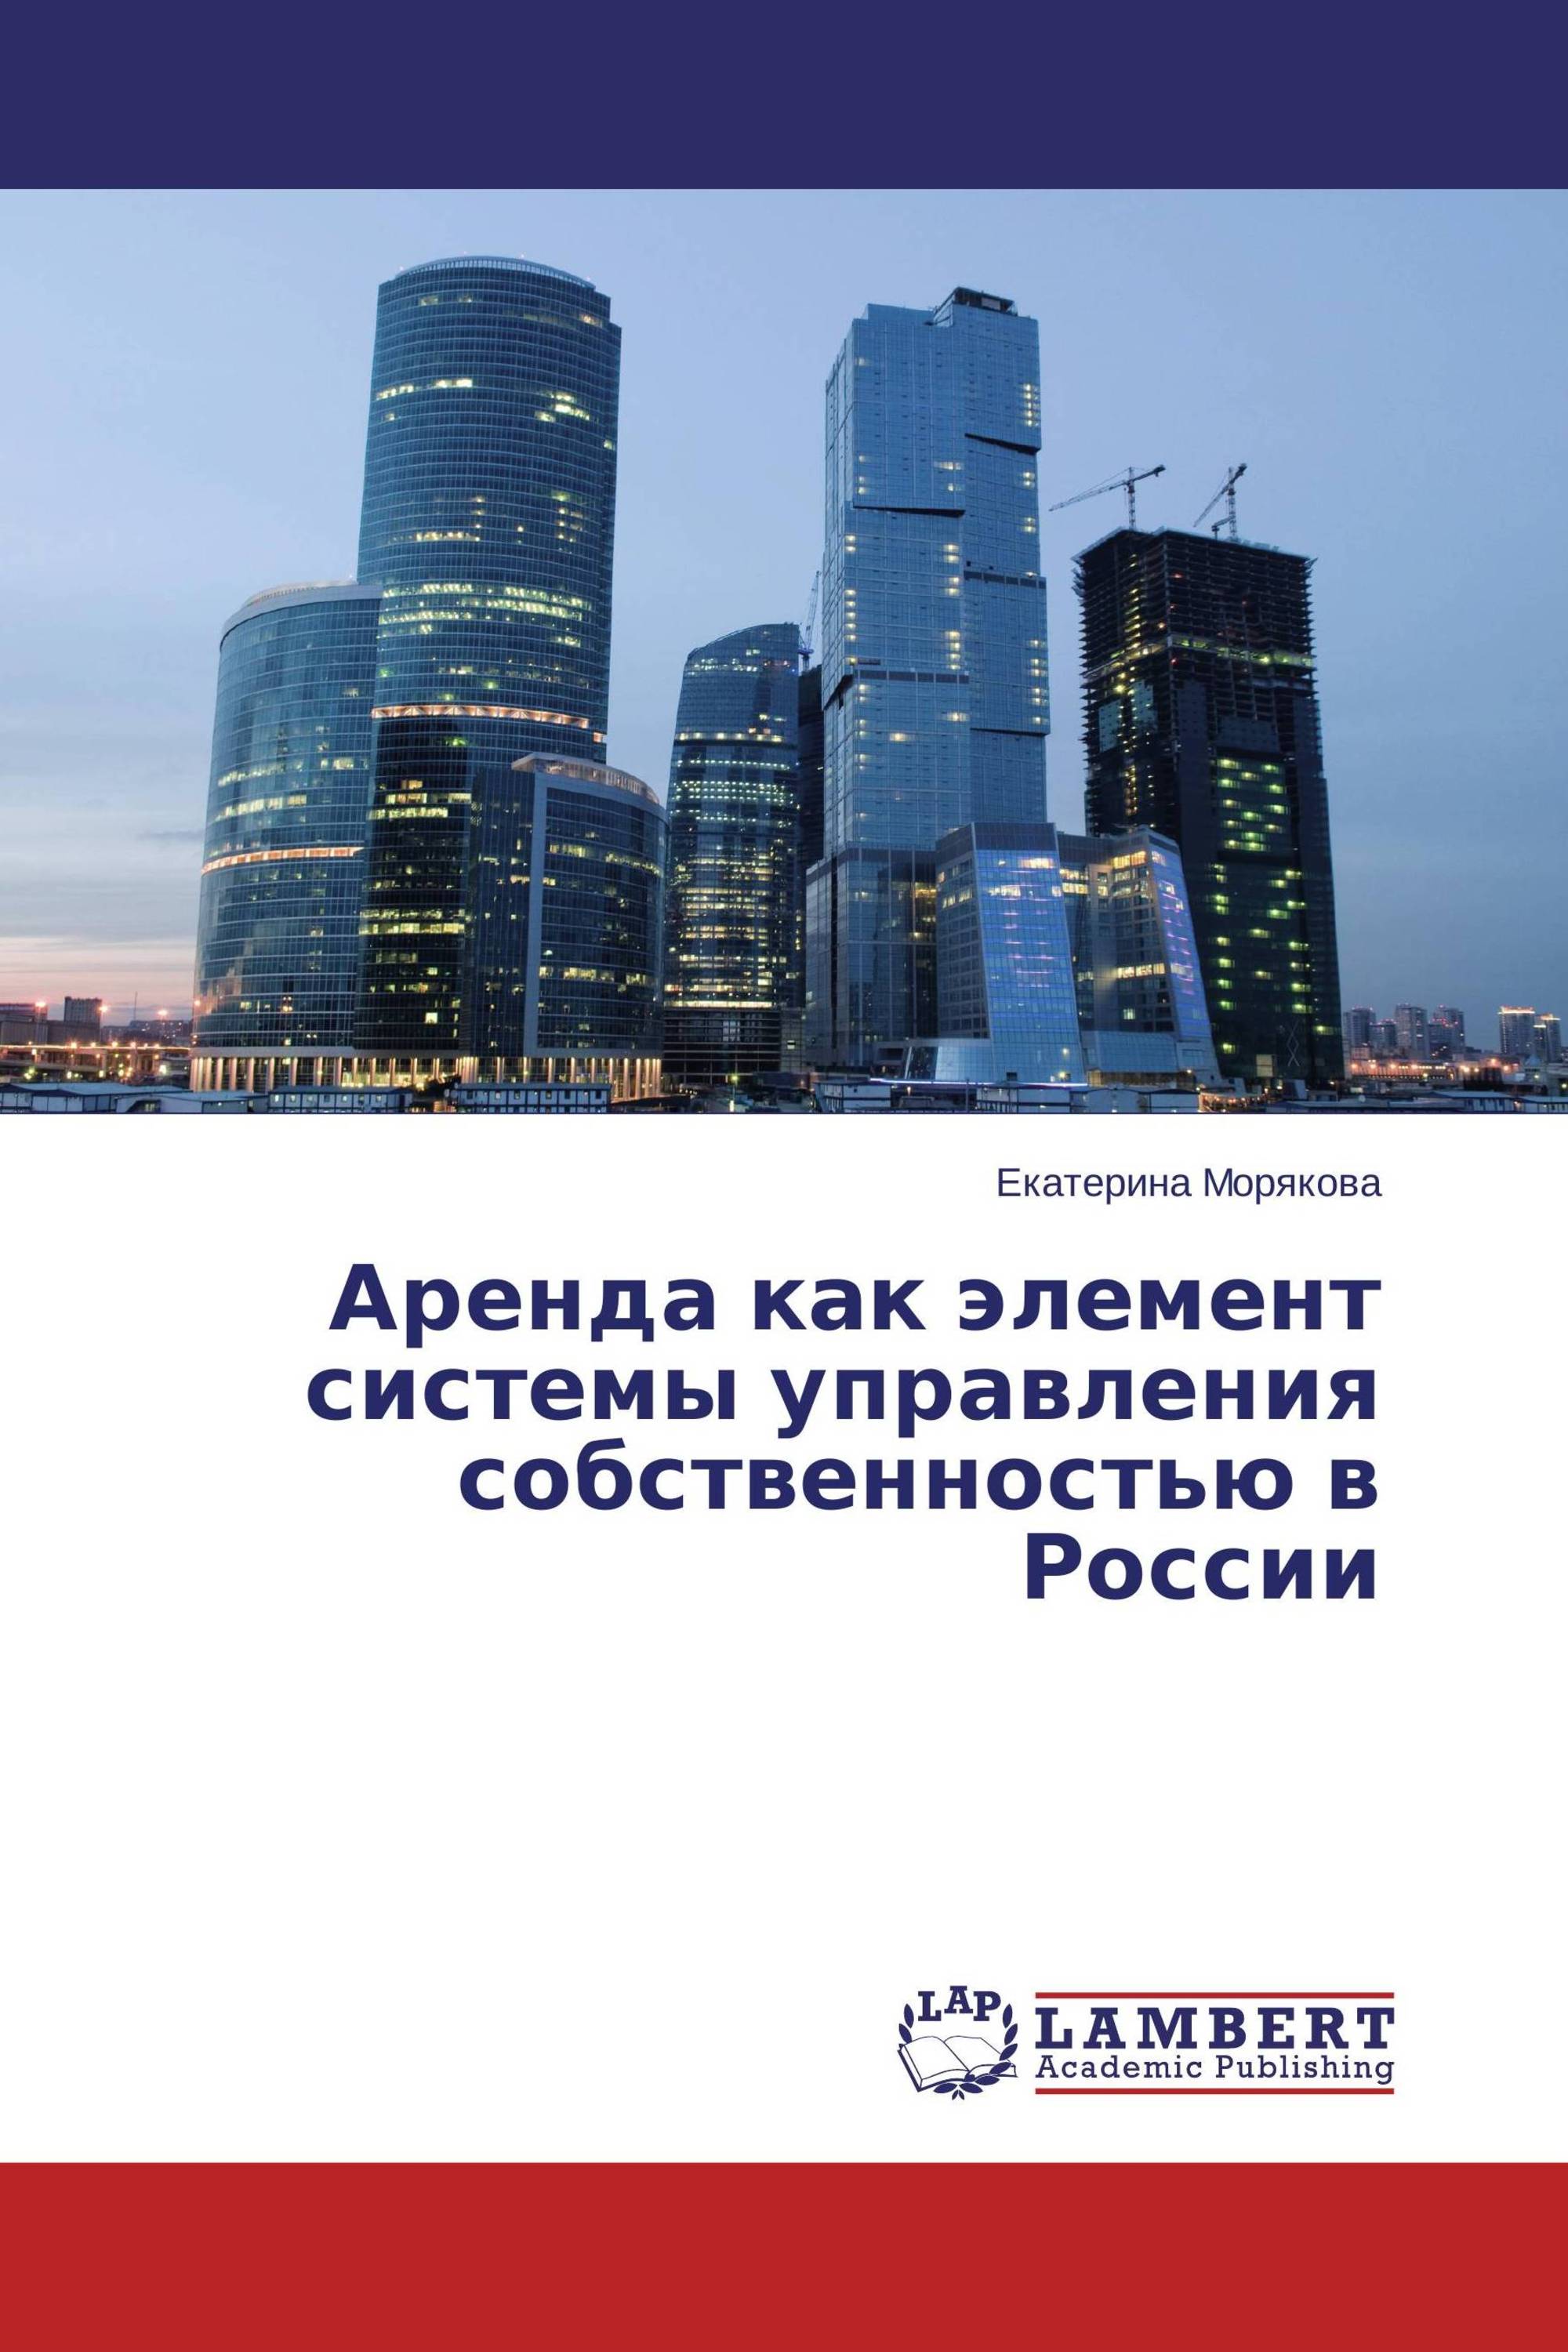 Аренда как элемент системы управления собственностью в России